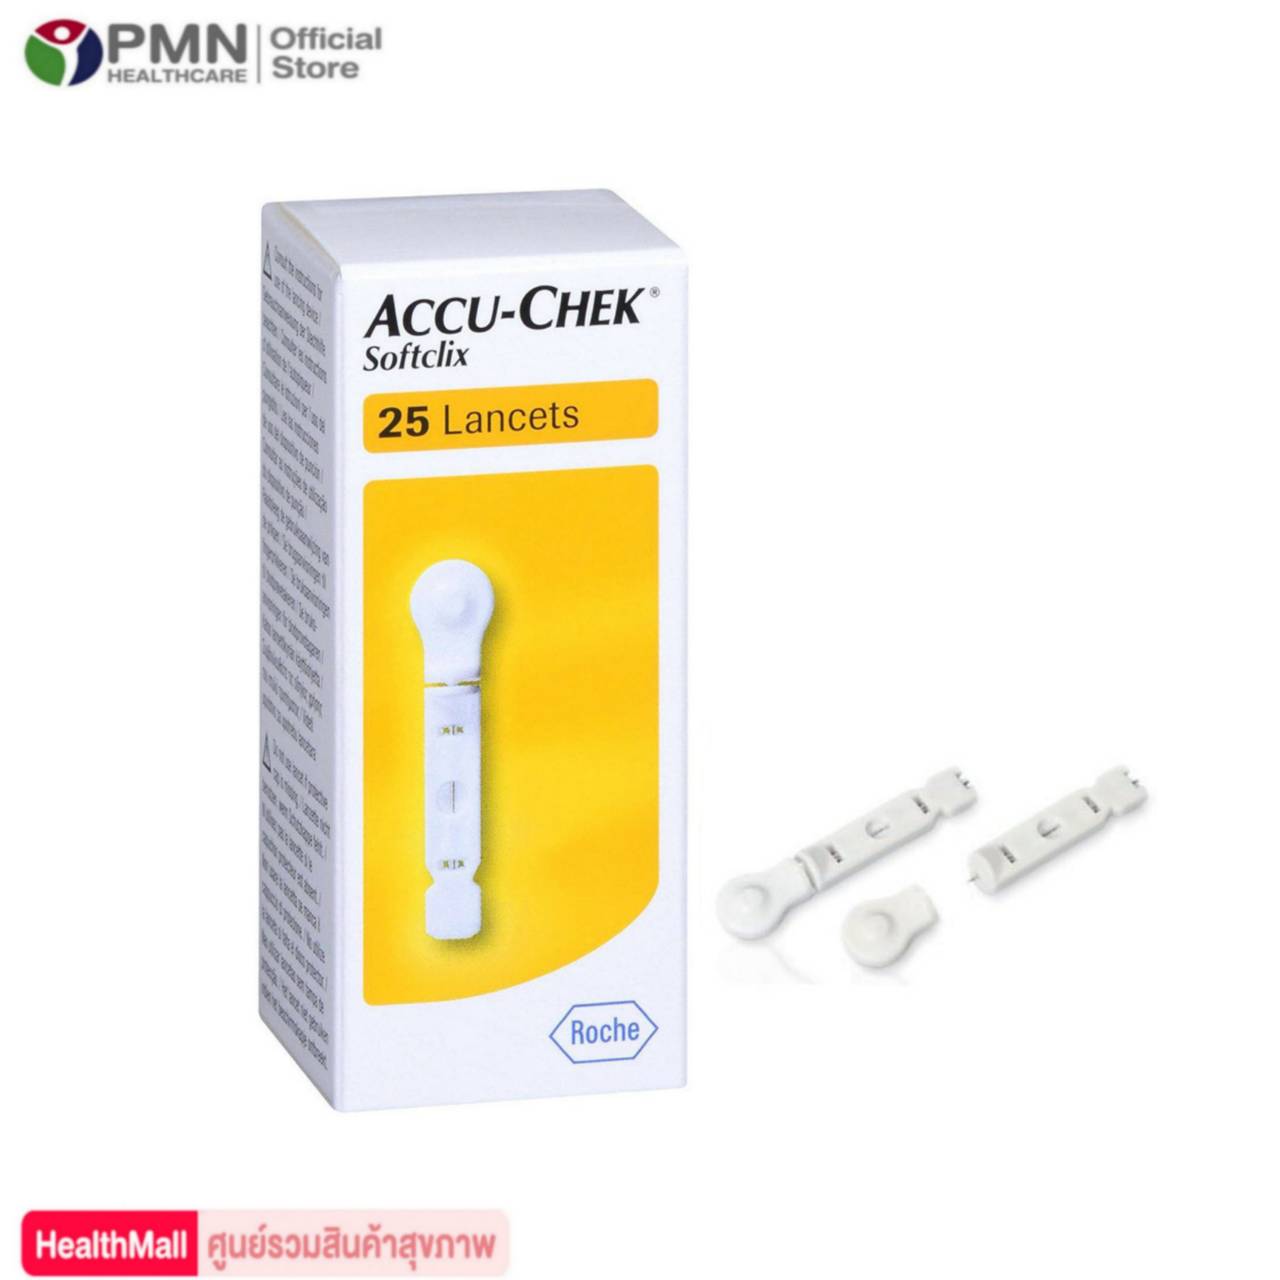 Accu chek softclix 25 ชิ้น Lancets เข็มเจาะเลือด ตรวจน้ำตาล ACCU-CHEK